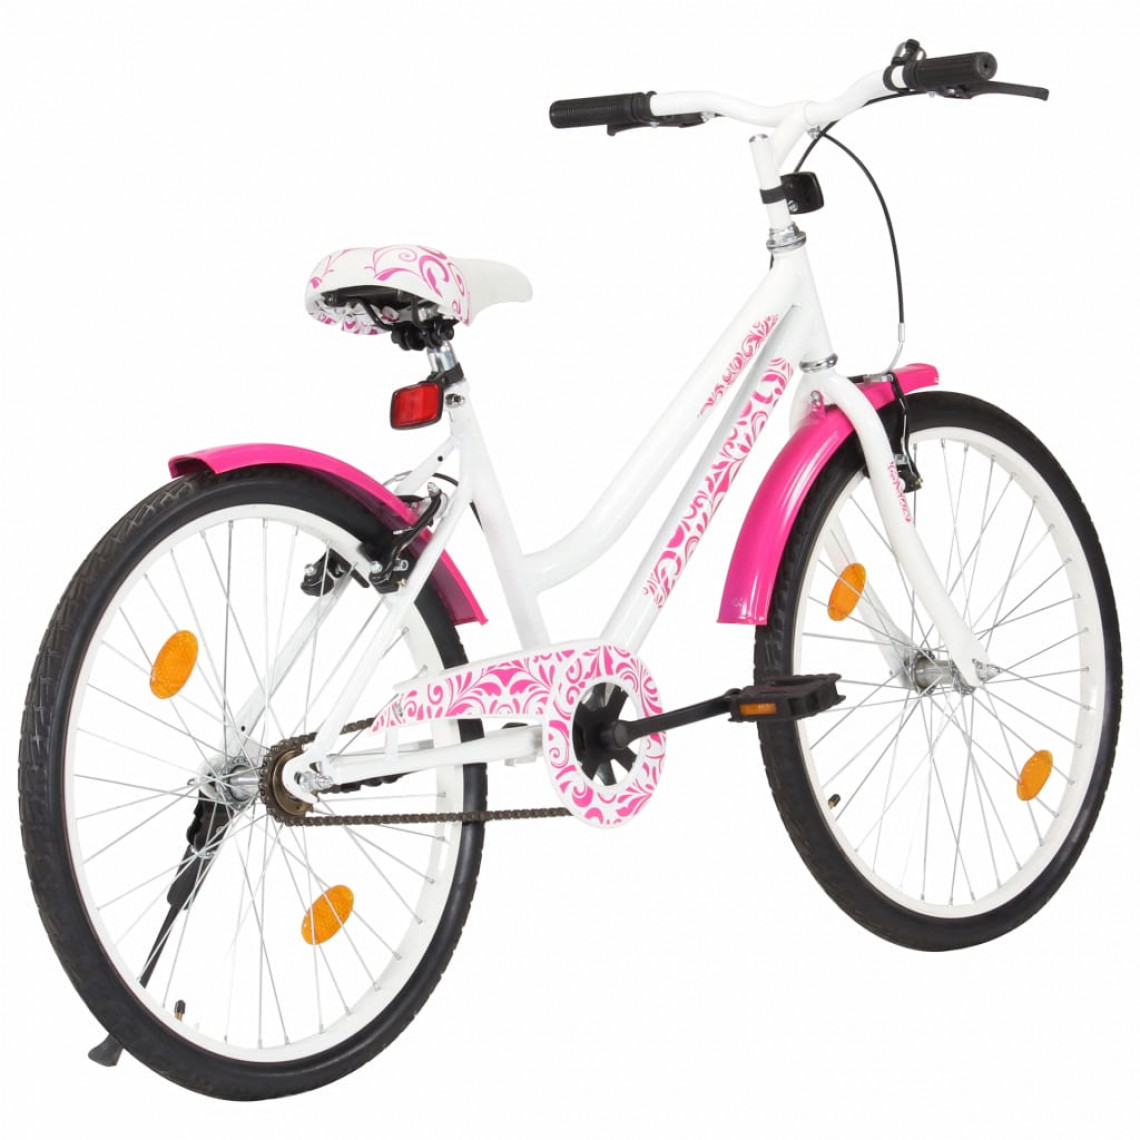 Icaverne - Icaverne - Vélos serie Vélo pour enfants 24 pouces Rose et blanc - Vélo électrique